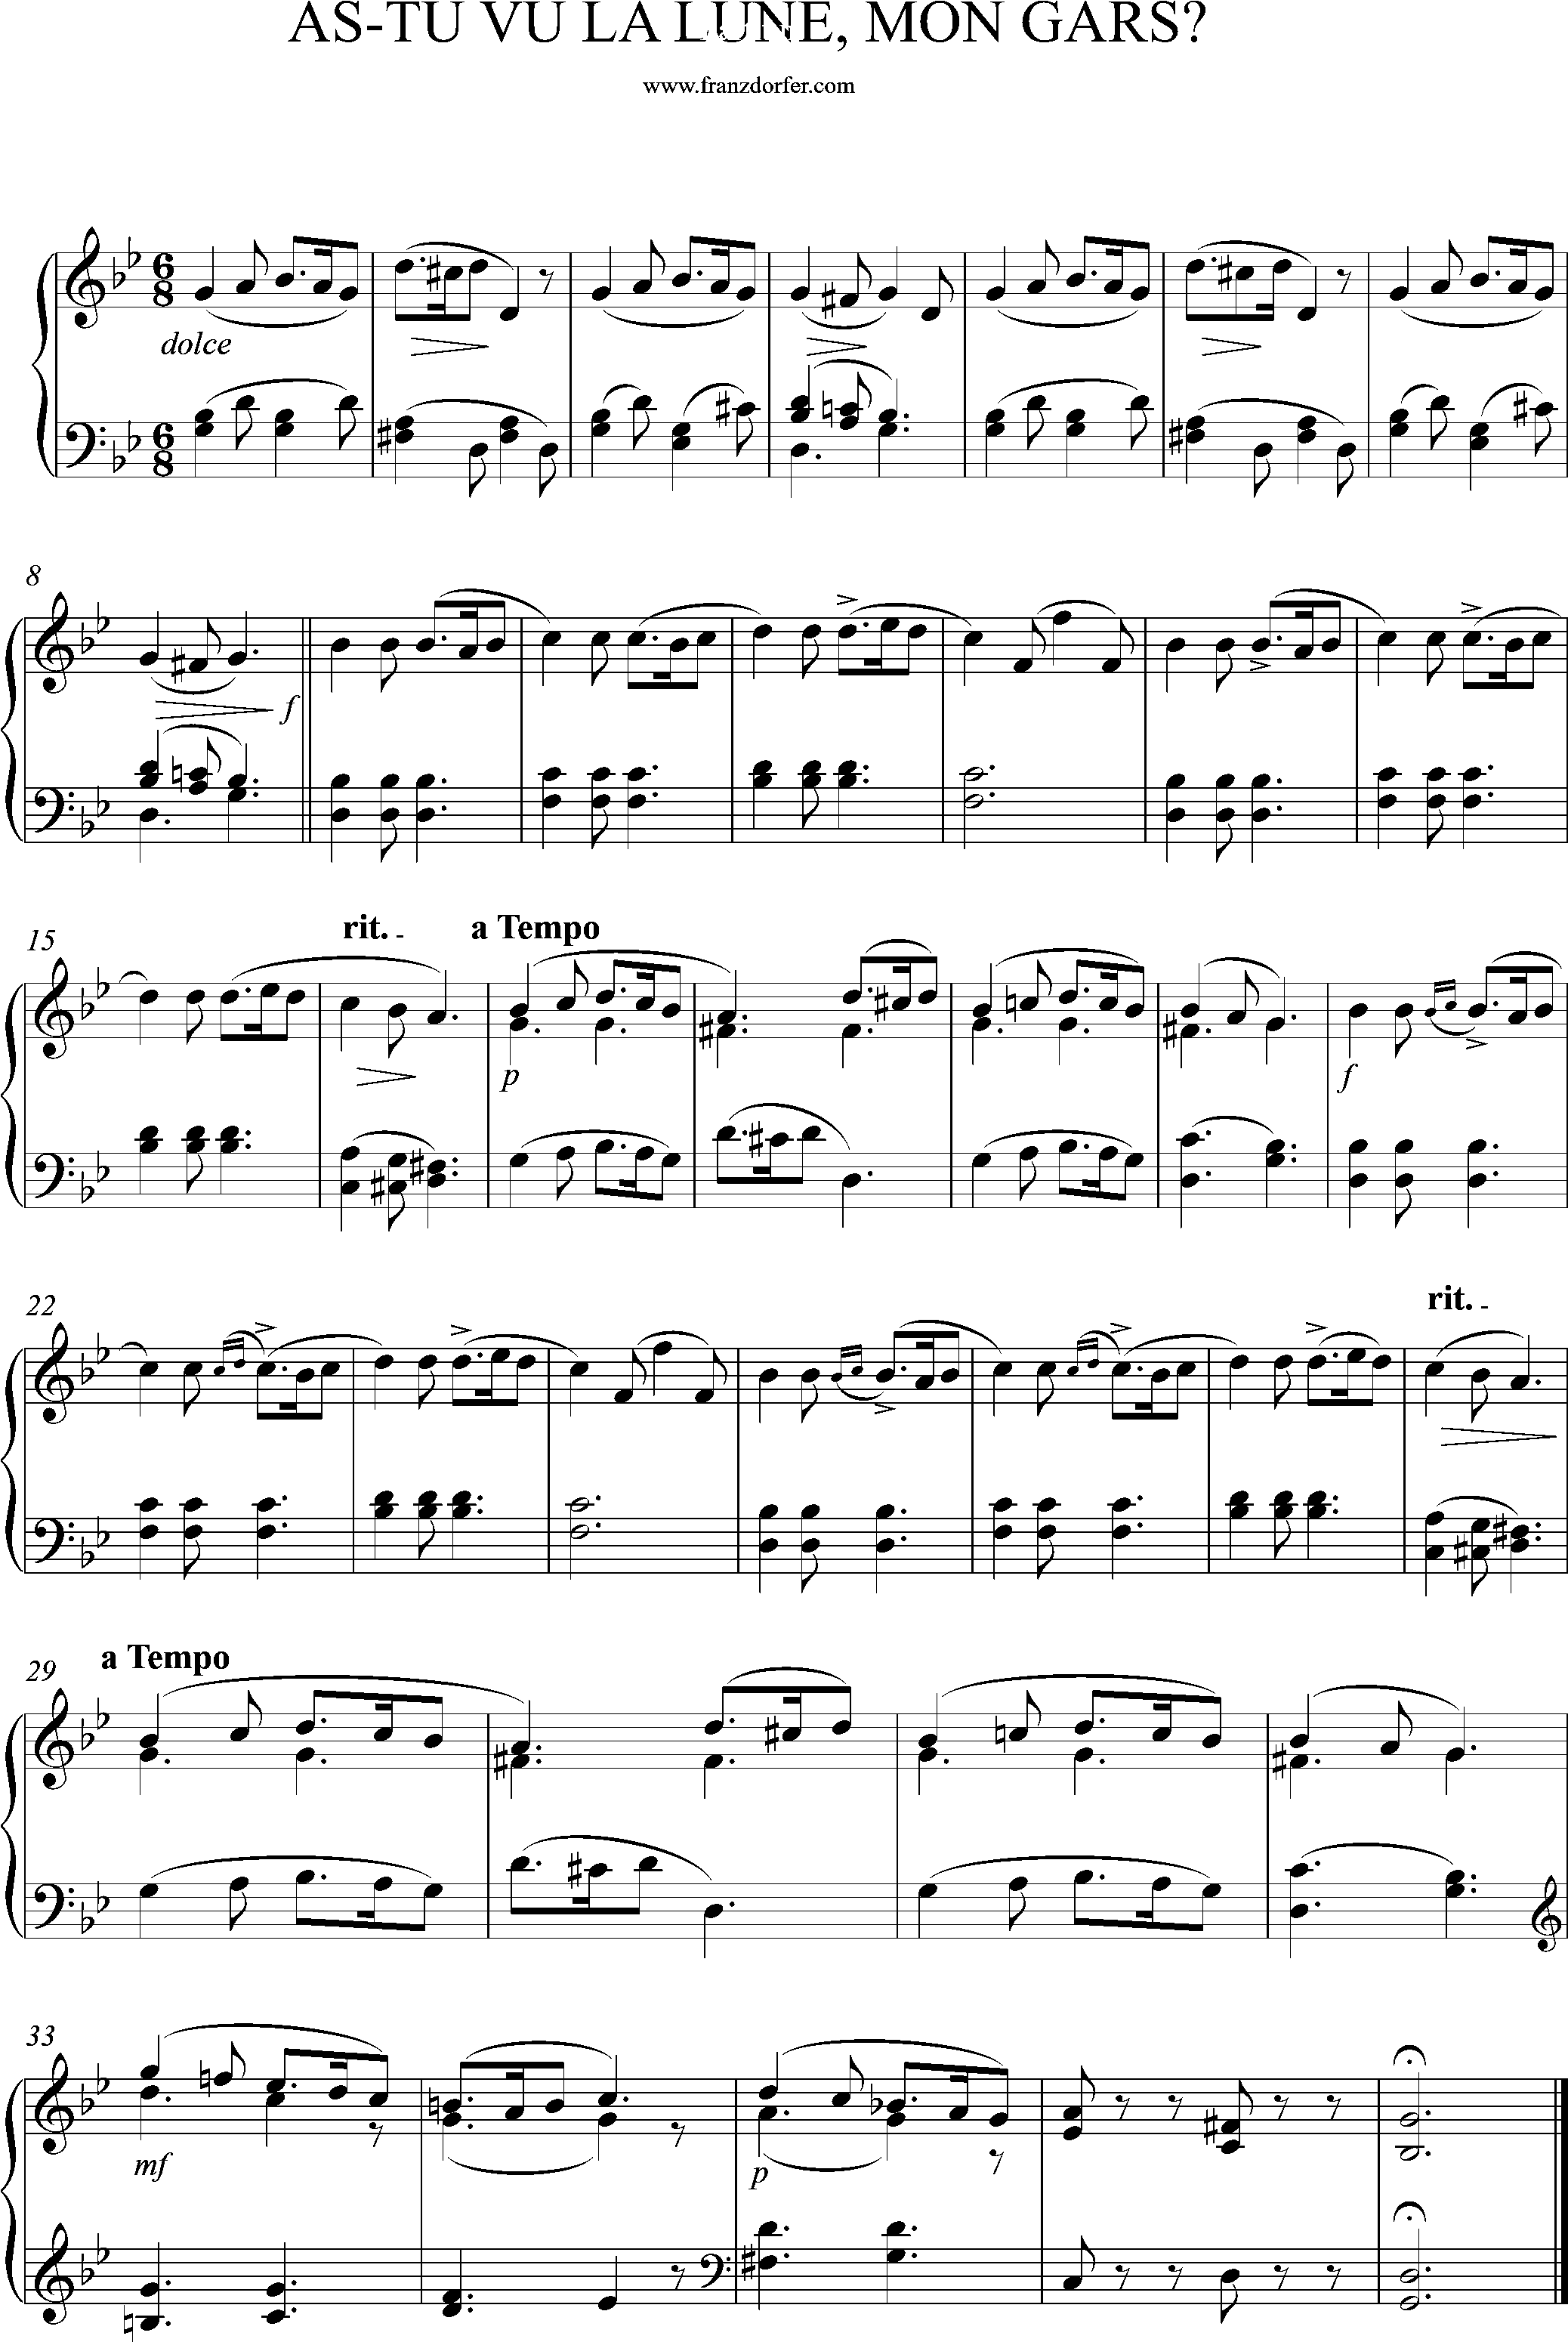 piano partitur, g-minor